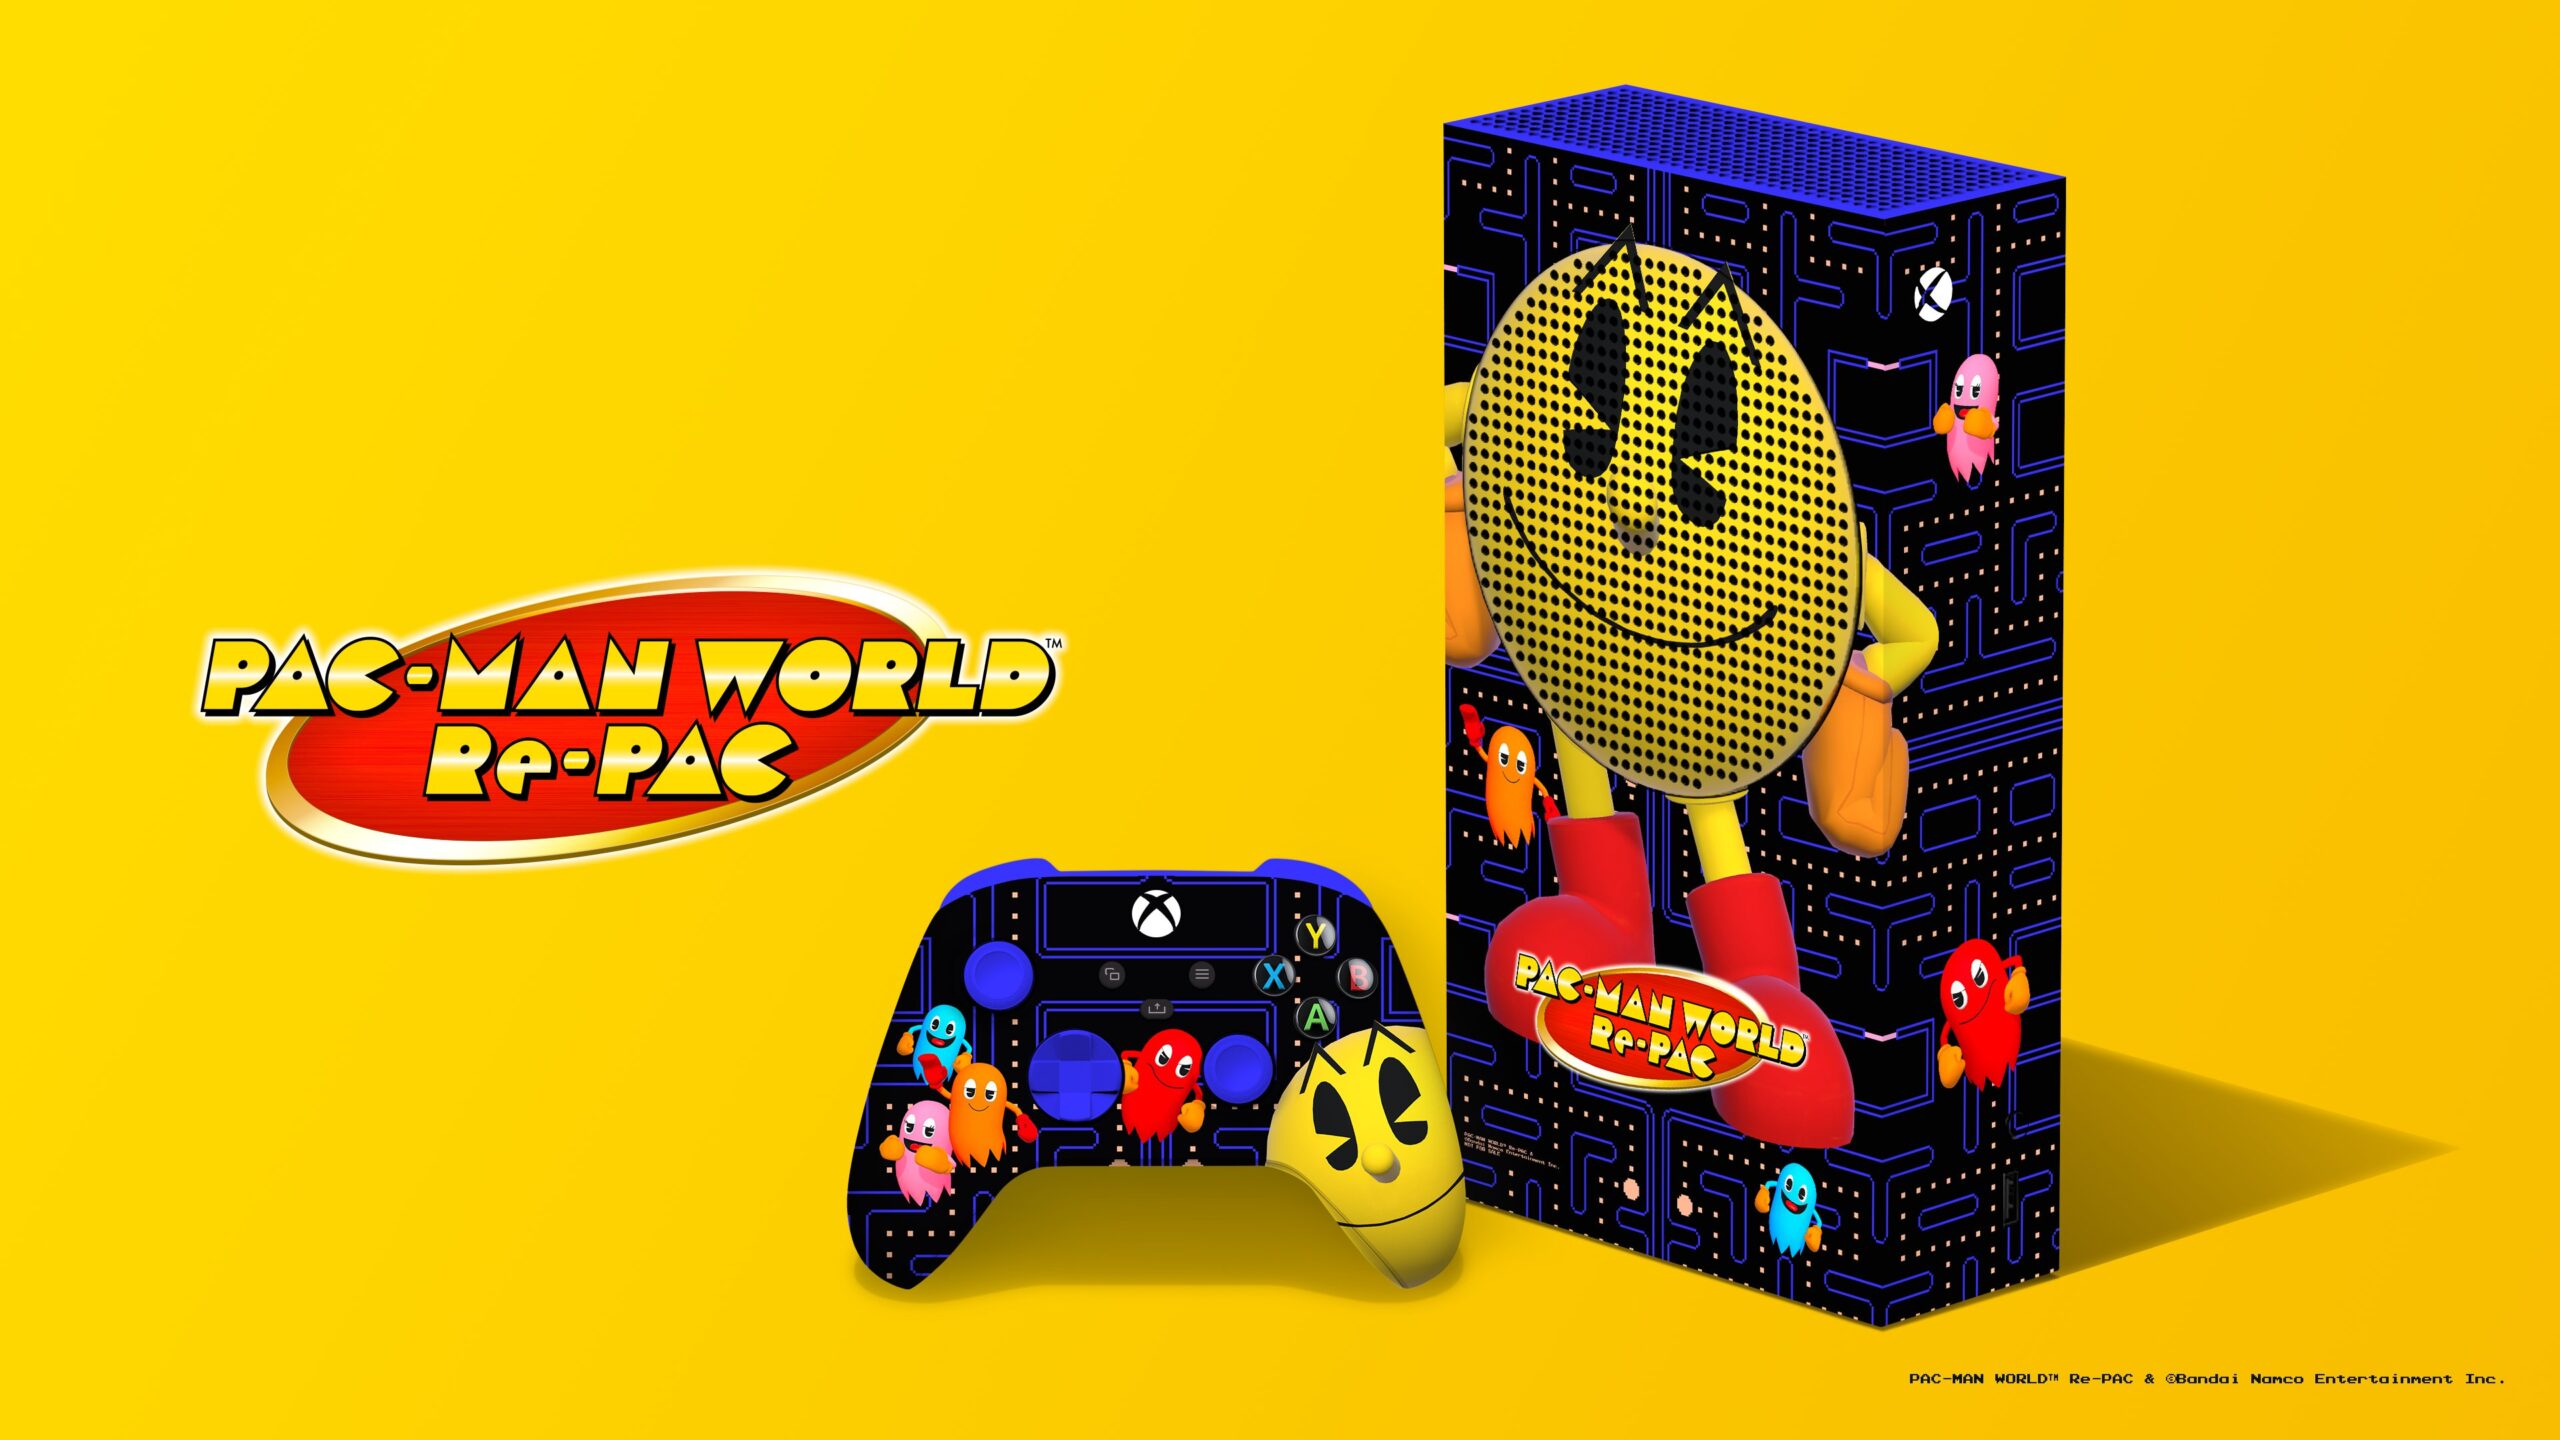 Xbox представил уникальную Xbox Series S в стиле Pac-Man: с сайта NEWXBOXONE.RU